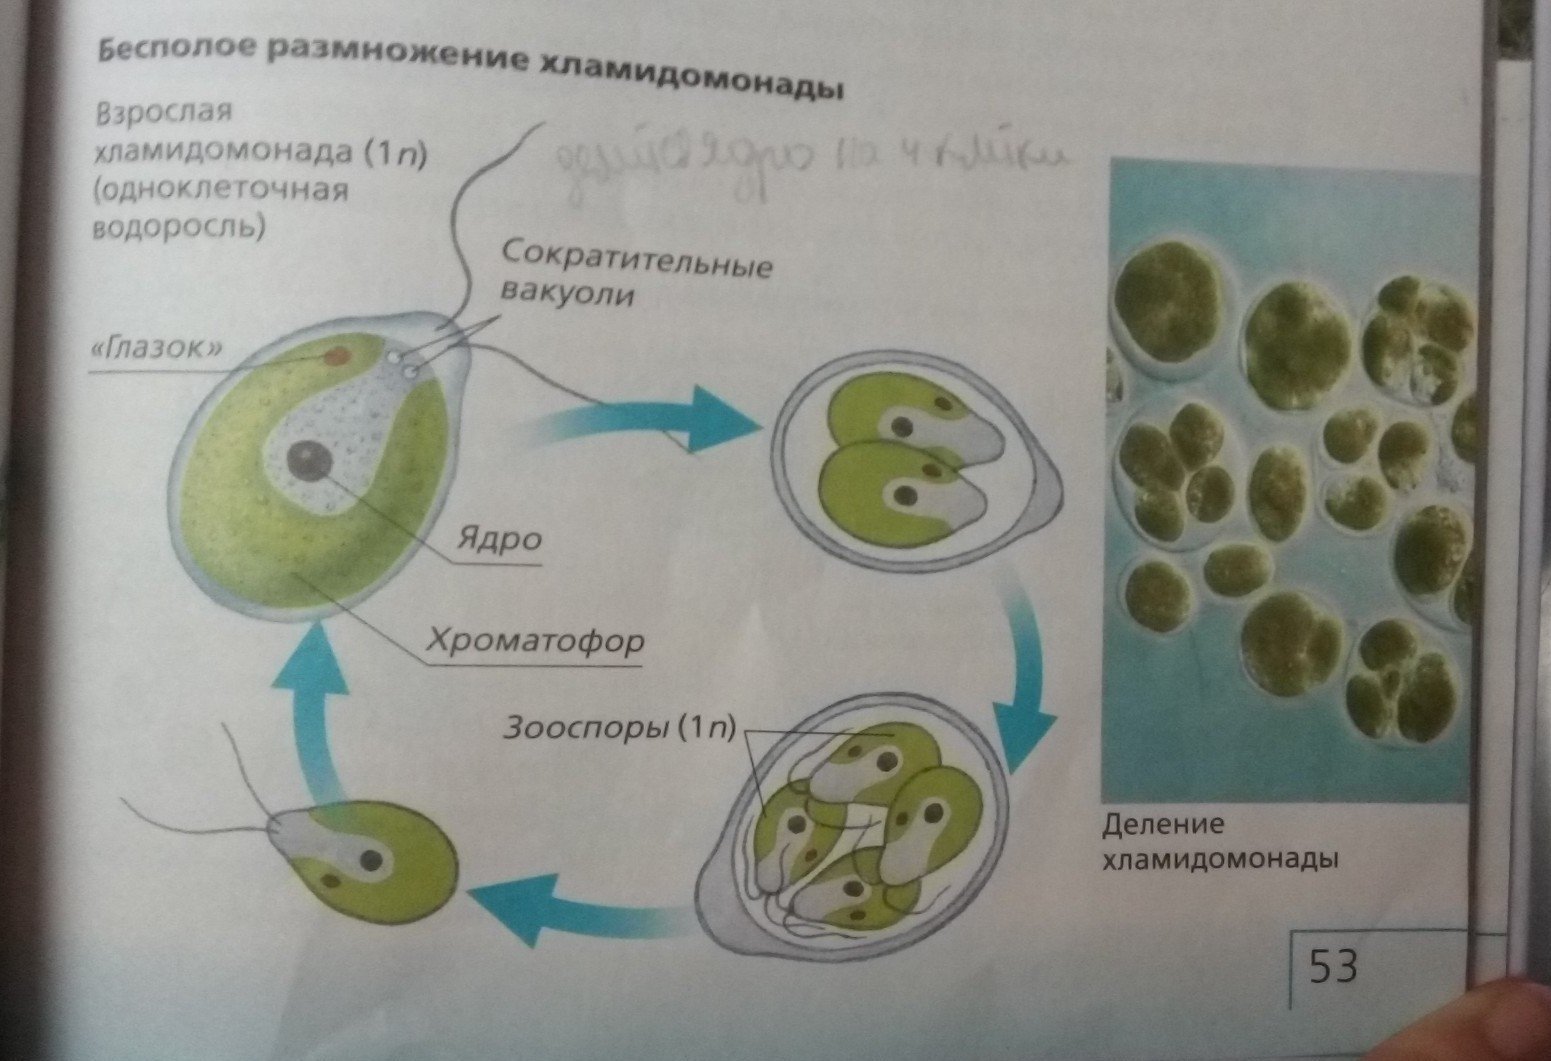 Развитие одноклеточных водорослей. Размножение одноклеточных водорослей хламидомонада. Половое размножение одноклеточных водорослей. Деление клетки хламидомонады. Бесполое размножение хламидомонады.